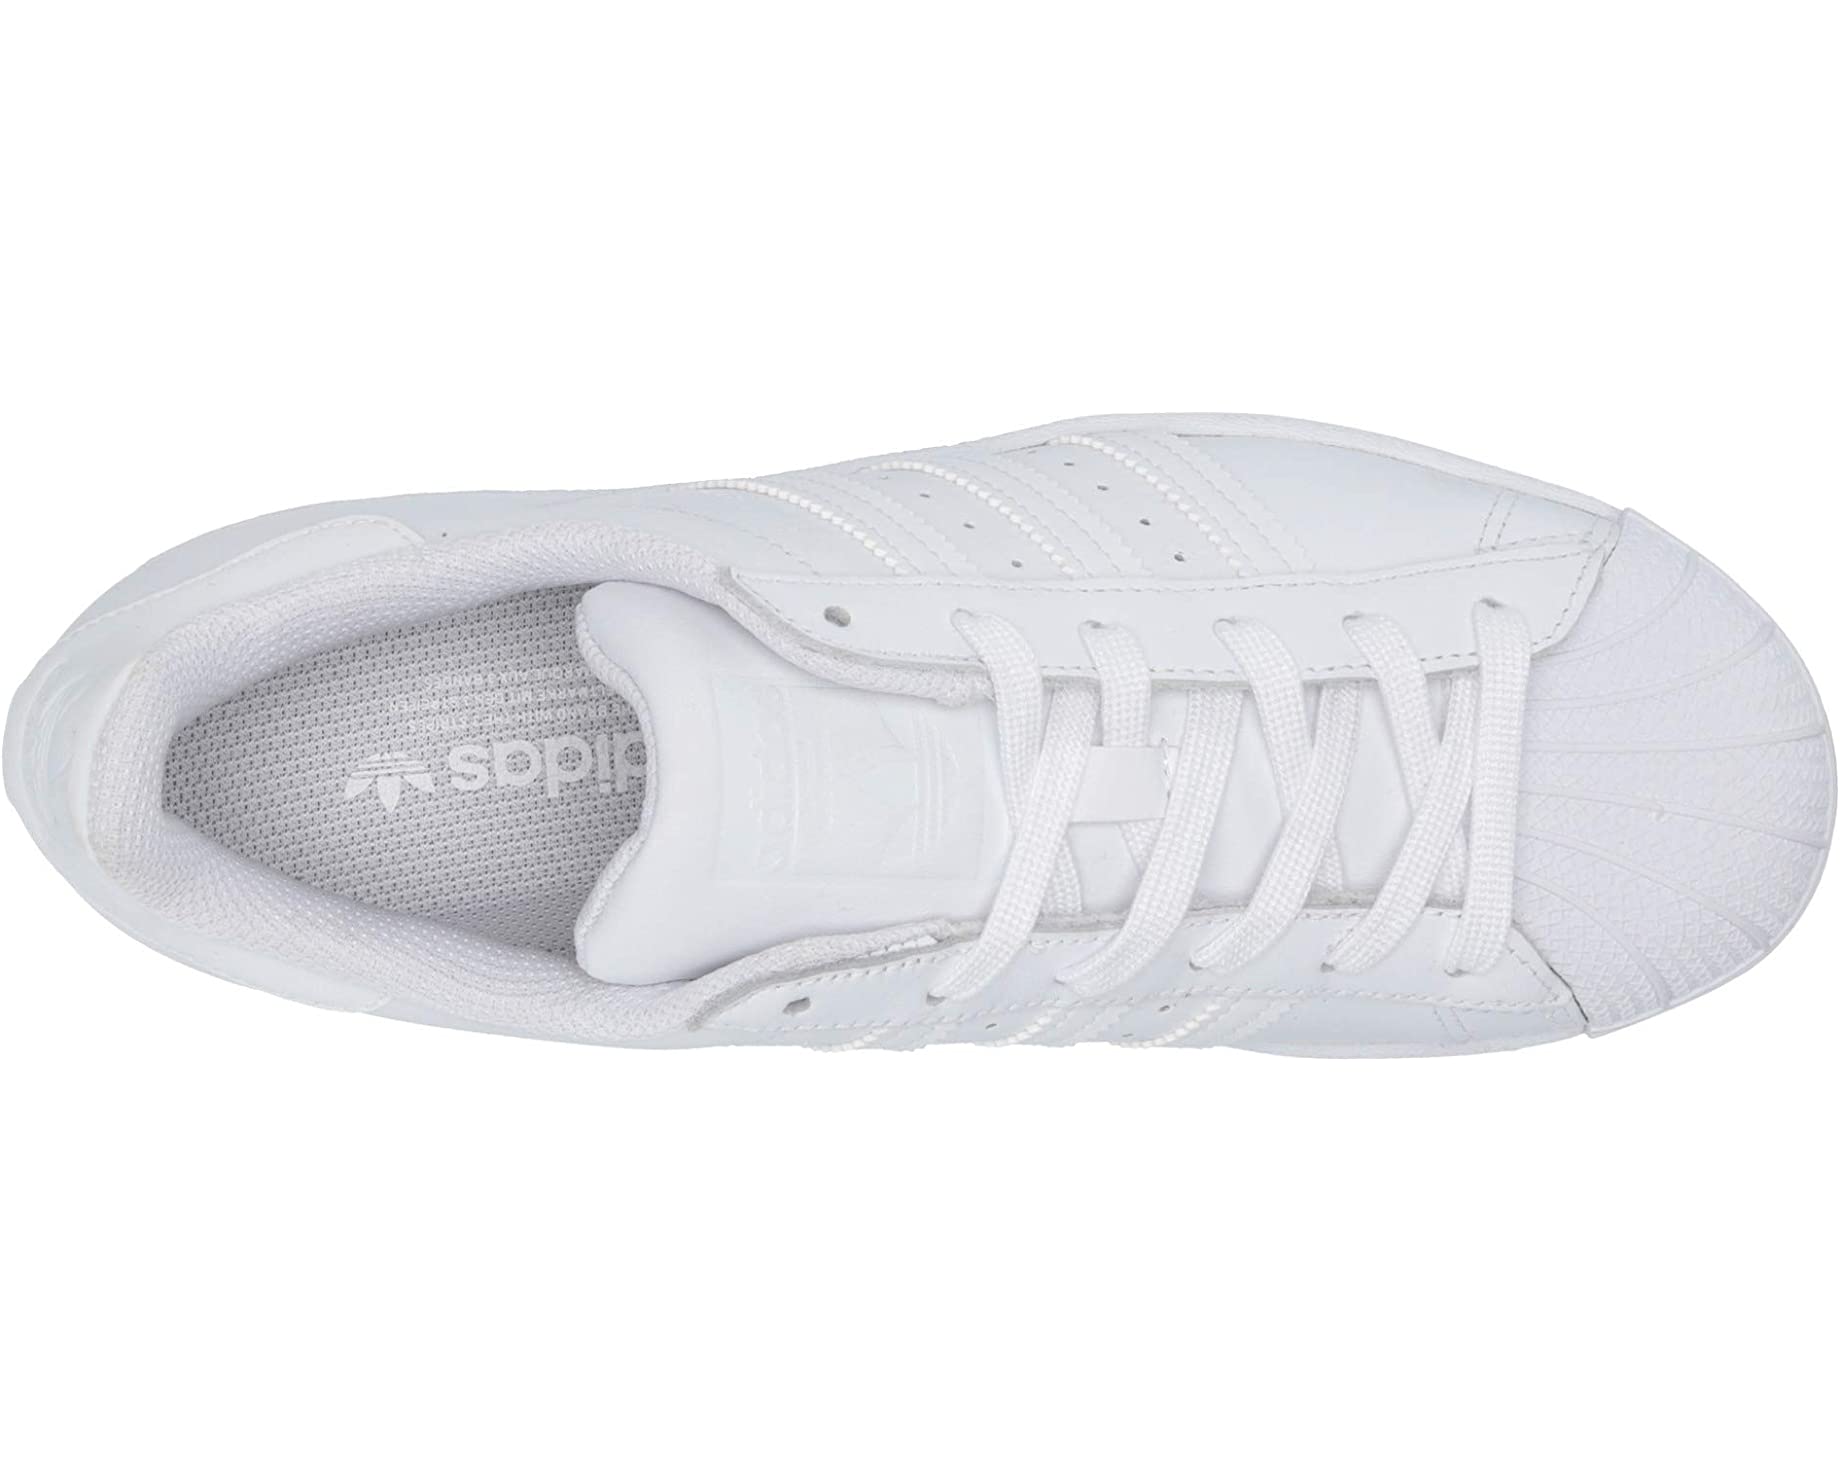 Кроссовки Superstar W adidas Originals, обувь белая кроссовки adidas originals superstar unisex footwear white quiet crimson gold foil